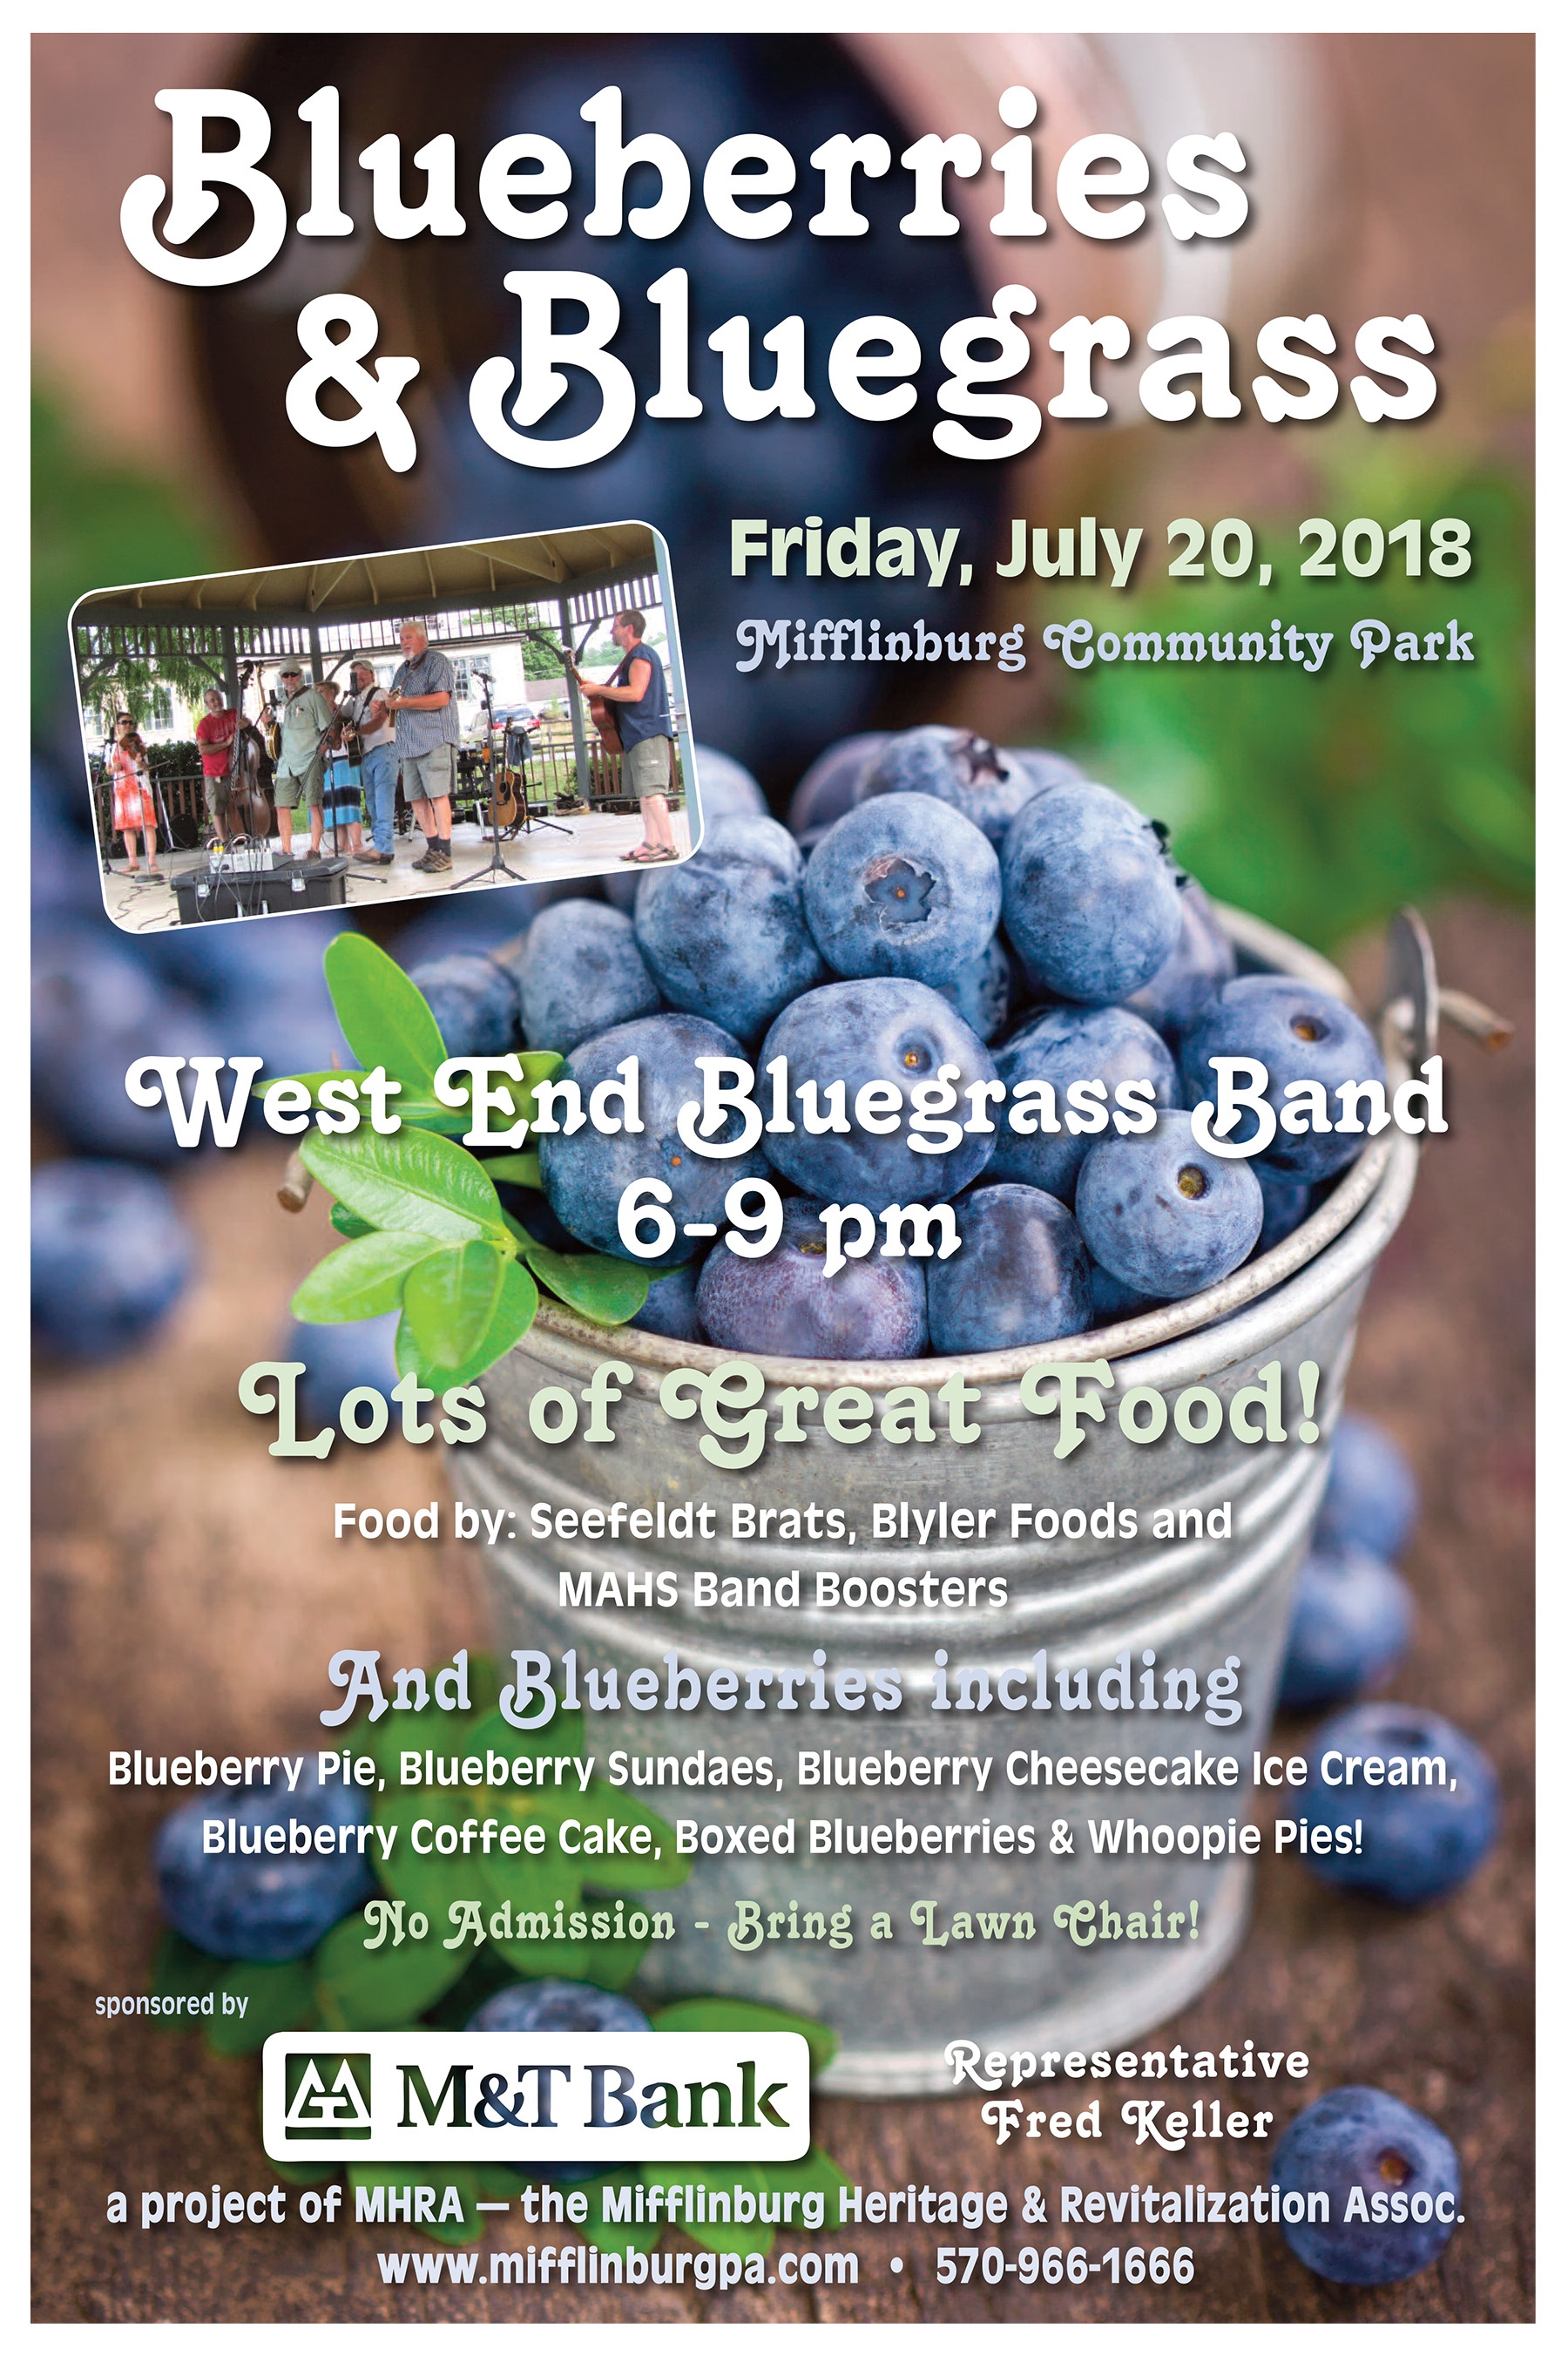 https://0201.nccdn.net/1_2/000/000/170/e99/Blueberries---Bluegrass-Poster-2018-1800x2704.jpg